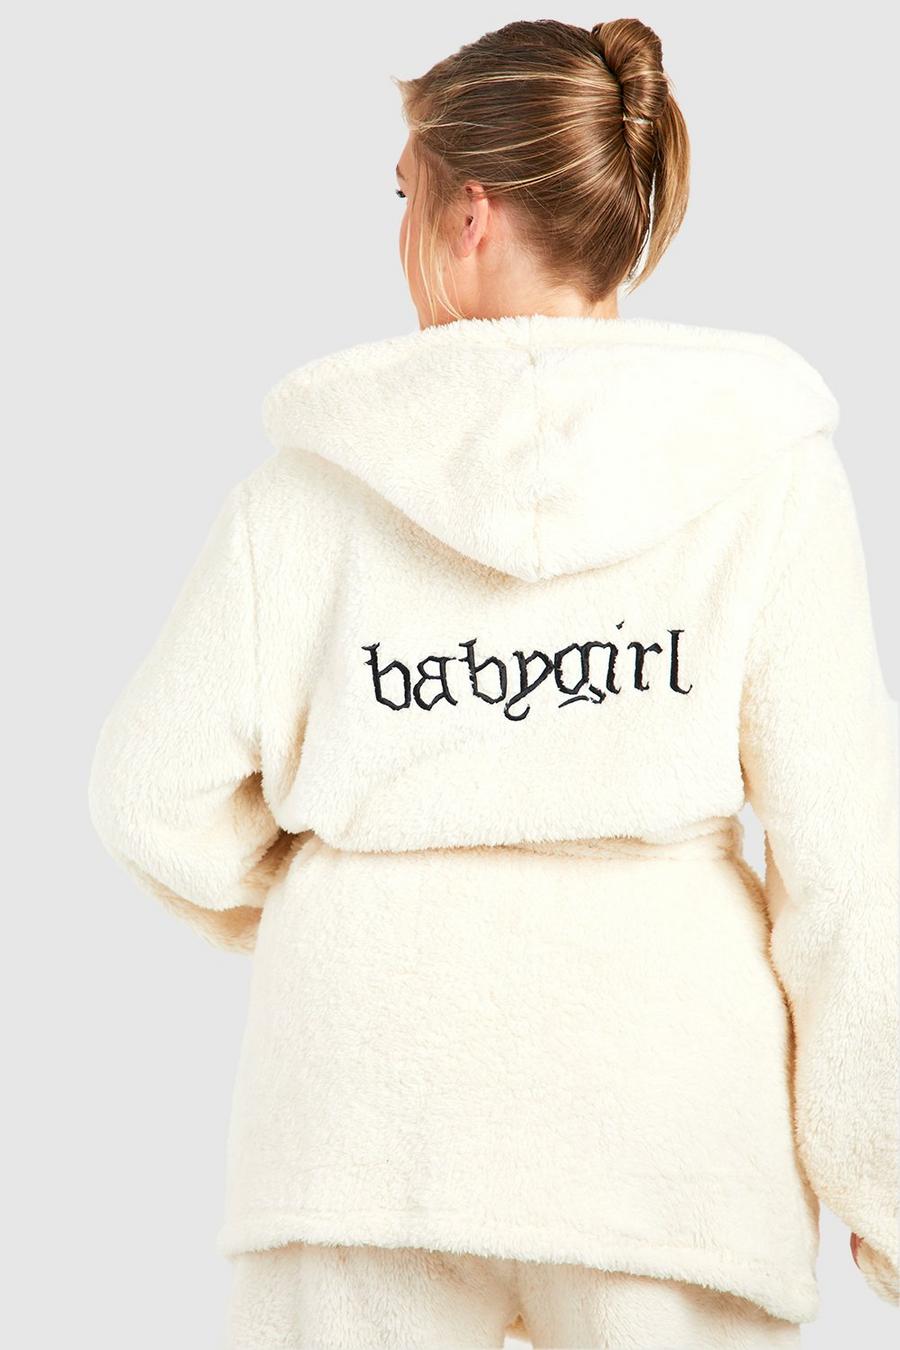 Vestaglia corta Plus Size in fleece con slogan Baby Girl, Cream